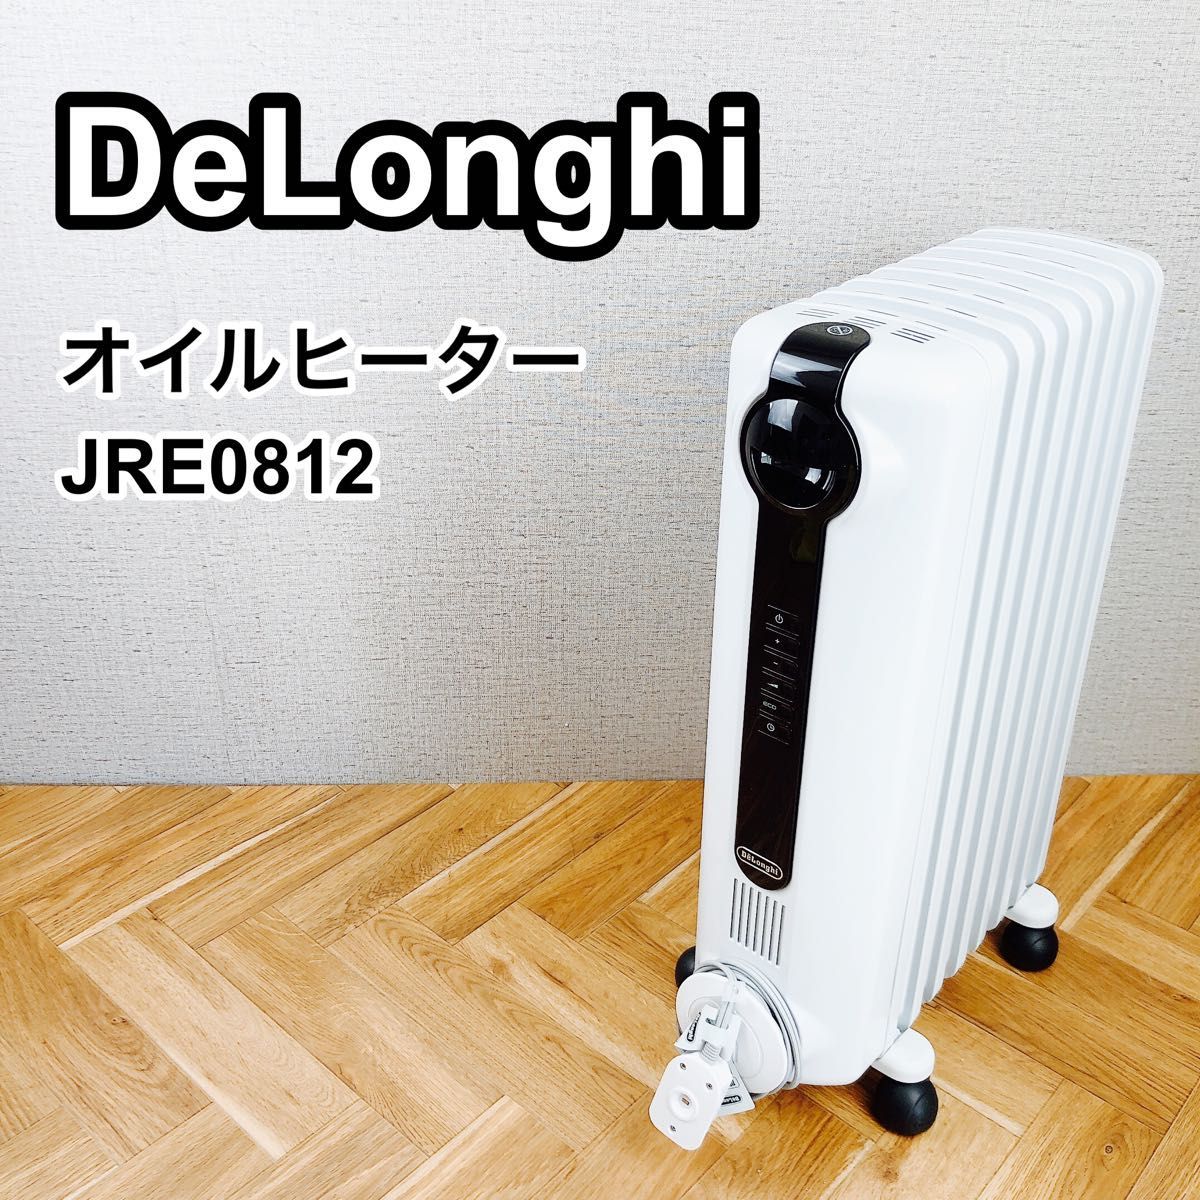 最前線の DeLonghi デロンギオイルヒーター JRE0812 オイルヒーター